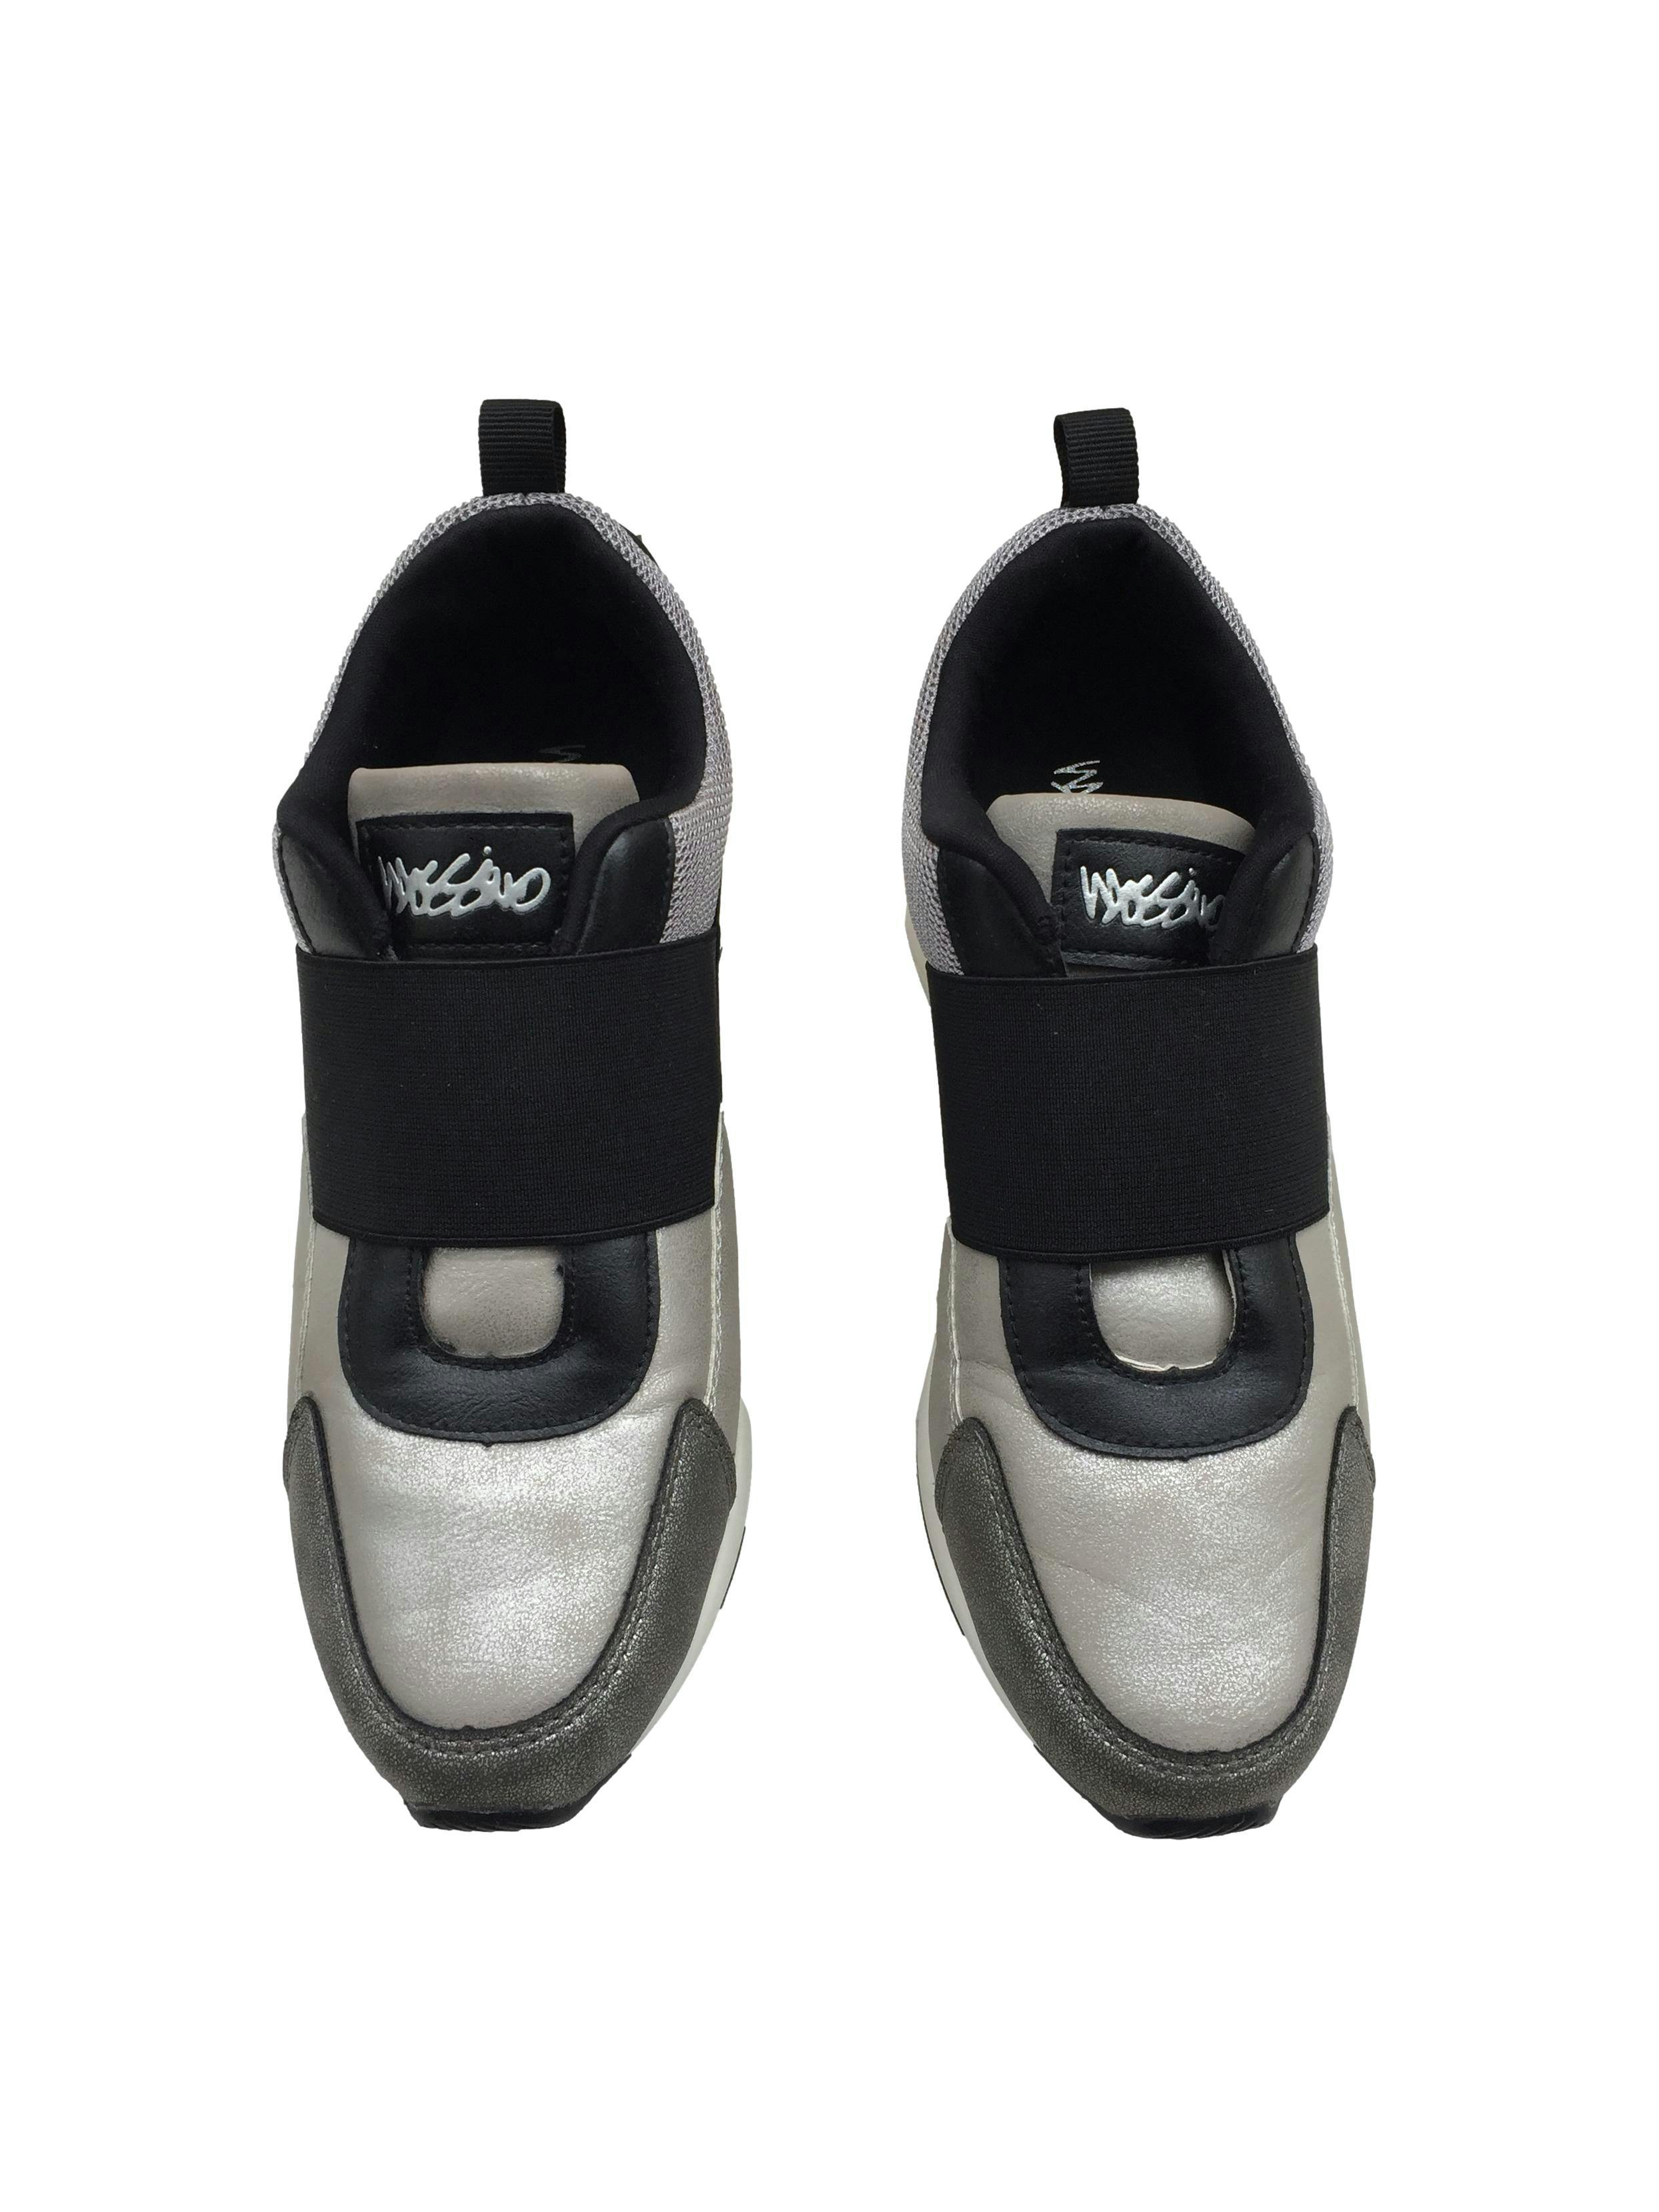 Zapatillas Mossimo platinadas con elástico en empeine, plataforma 6cm. Estado 8/10.